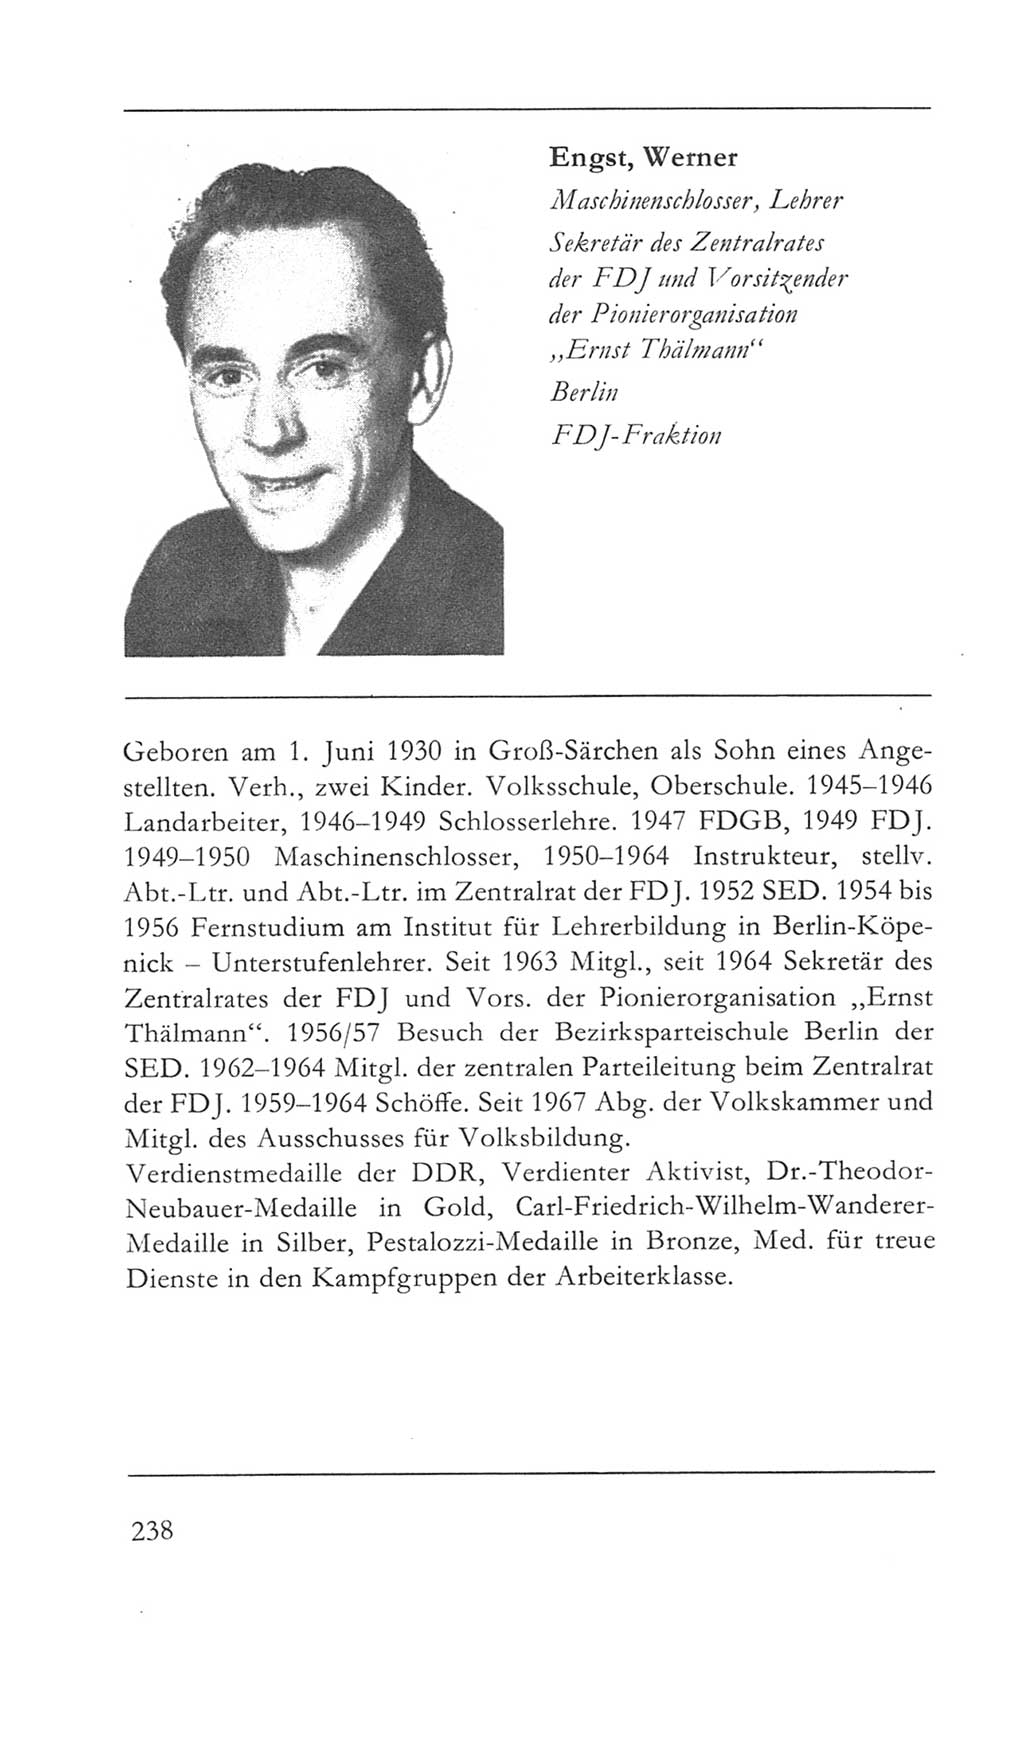 Volkskammer (VK) der Deutschen Demokratischen Republik (DDR) 5. Wahlperiode 1967-1971, Seite 238 (VK. DDR 5. WP. 1967-1971, S. 238)